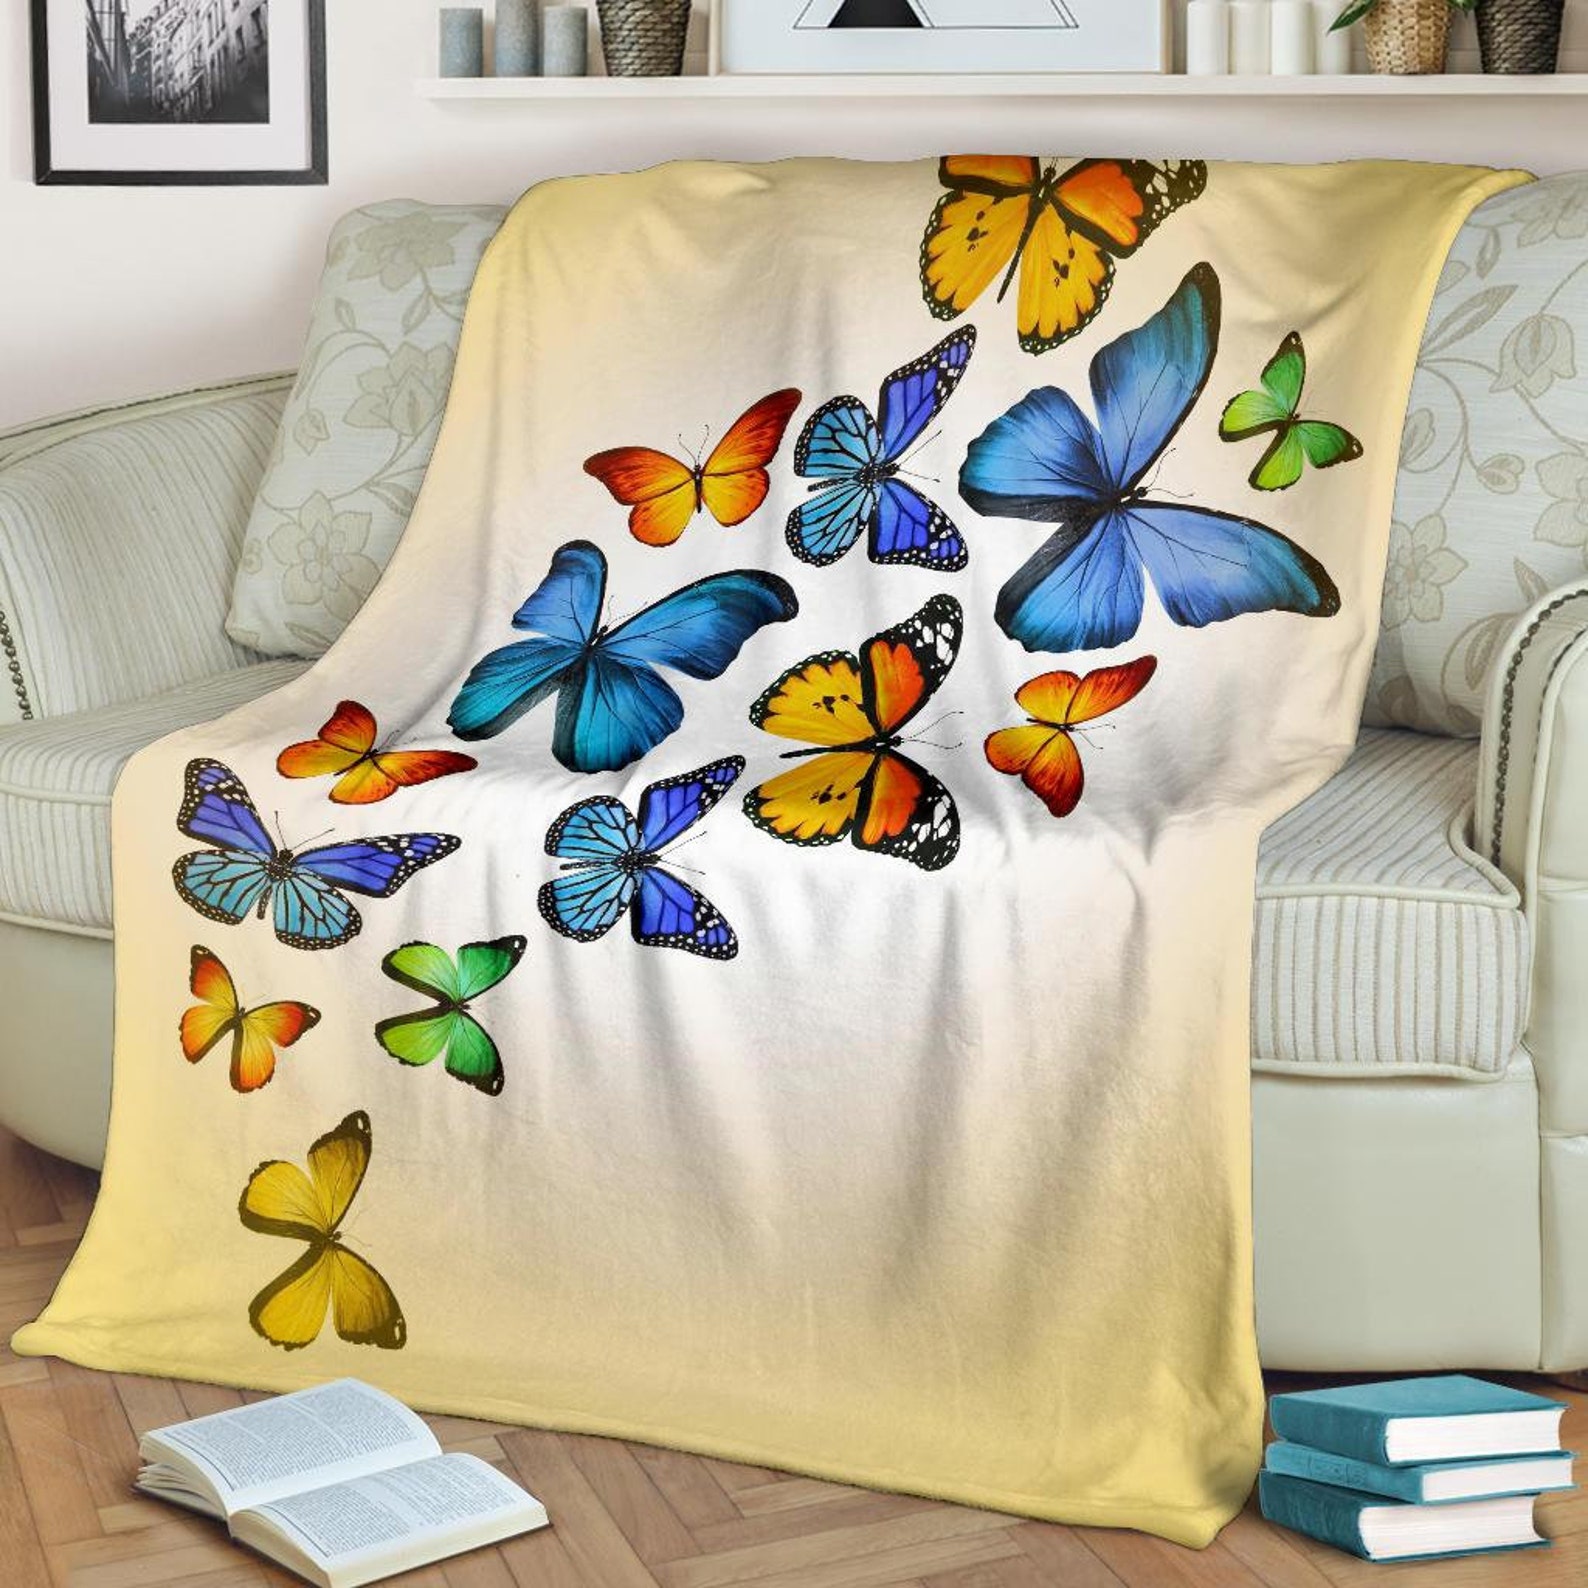 Butterfly Blanket Butterfly Blanket Butterfly Throw - Etsy